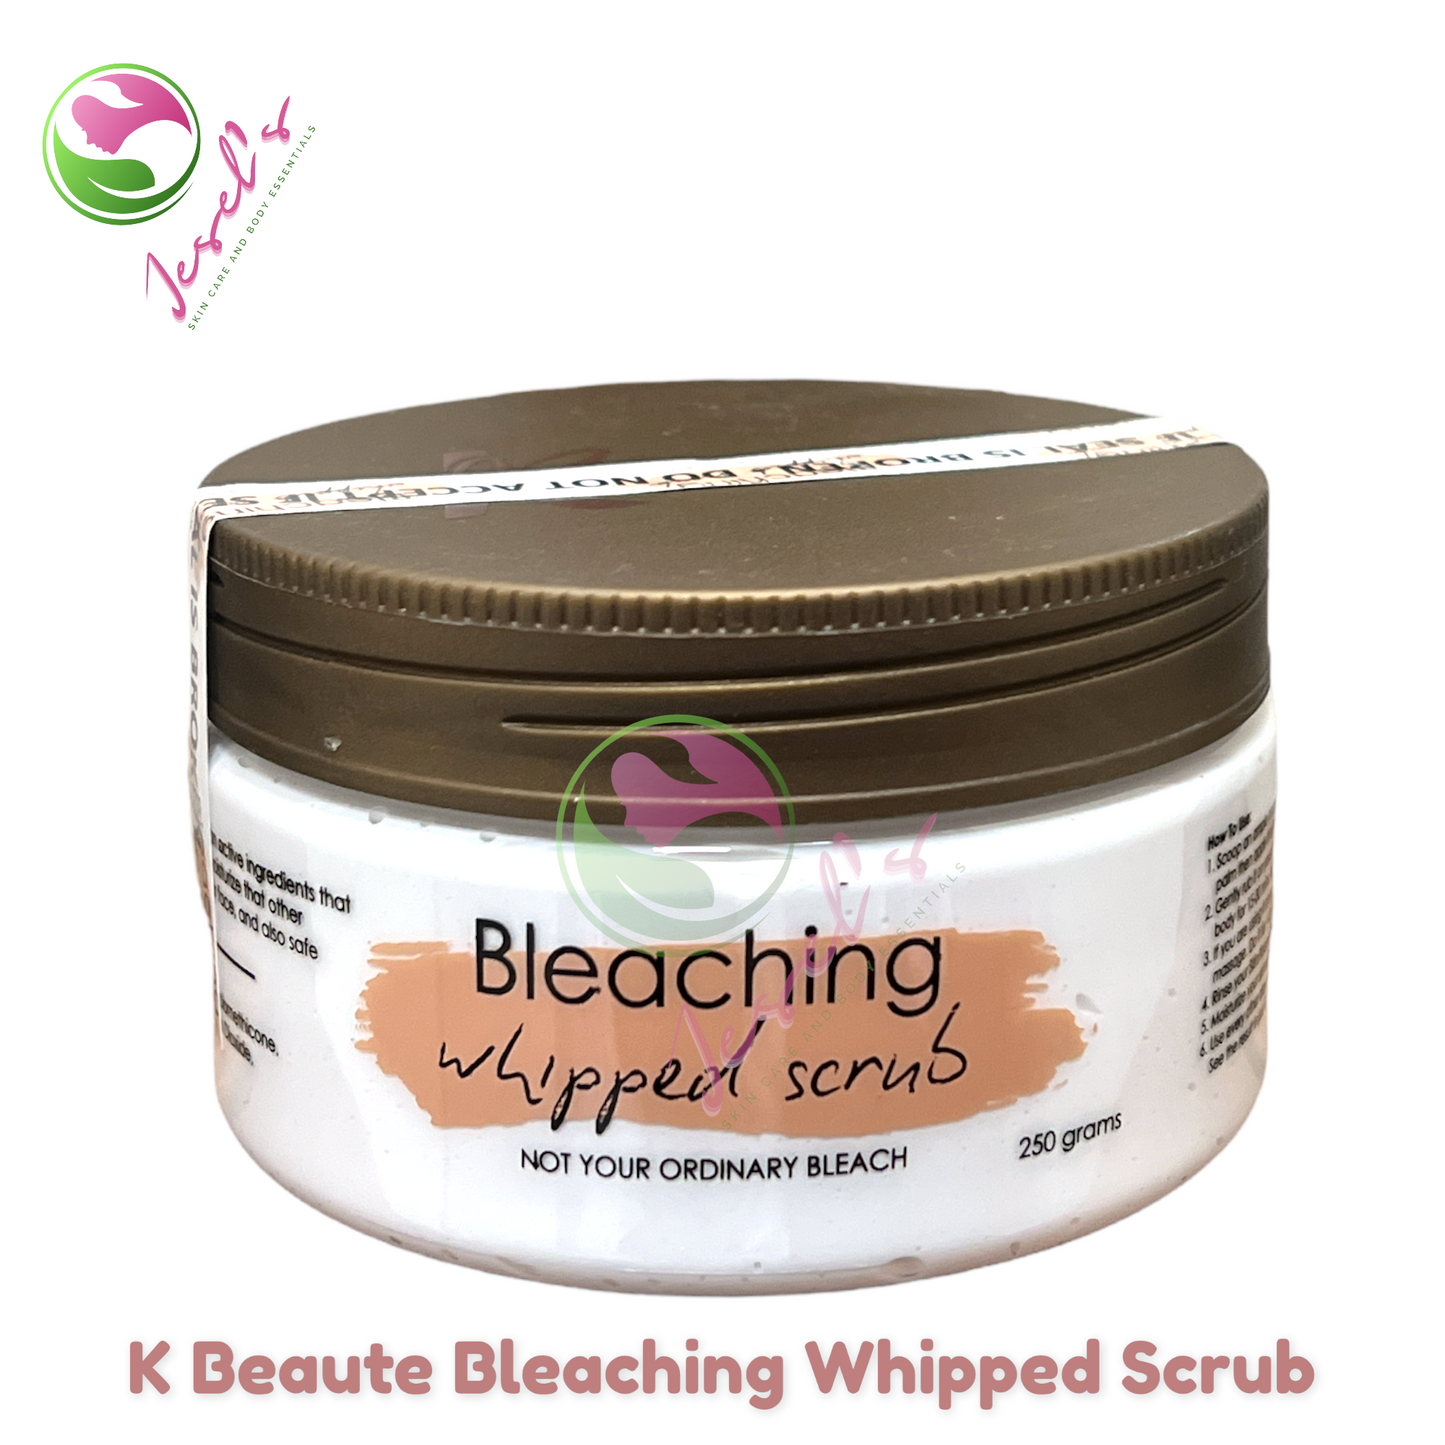 K Beaute Bleaching Whipped Scrub